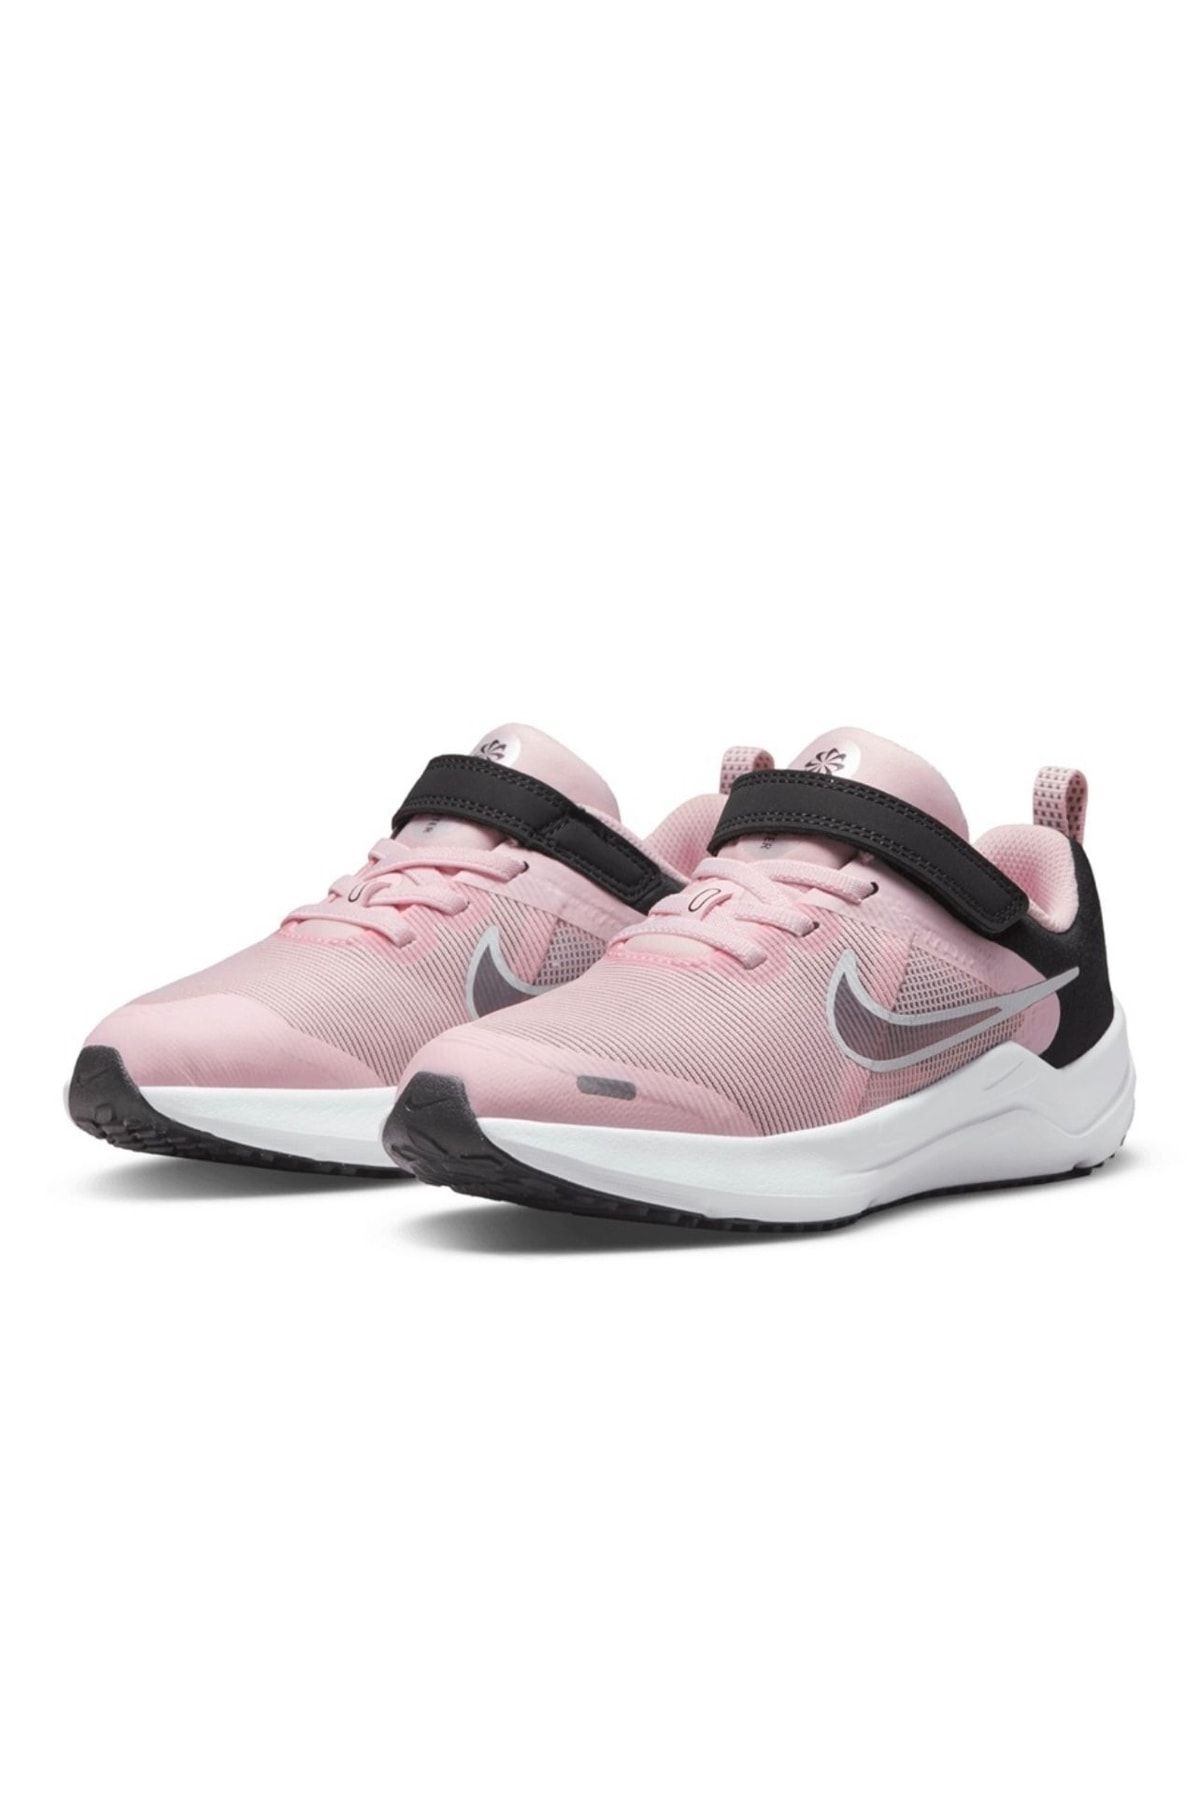 Nike Downshıfter Kız Çoçuk Yürüyüş Ayakkabı